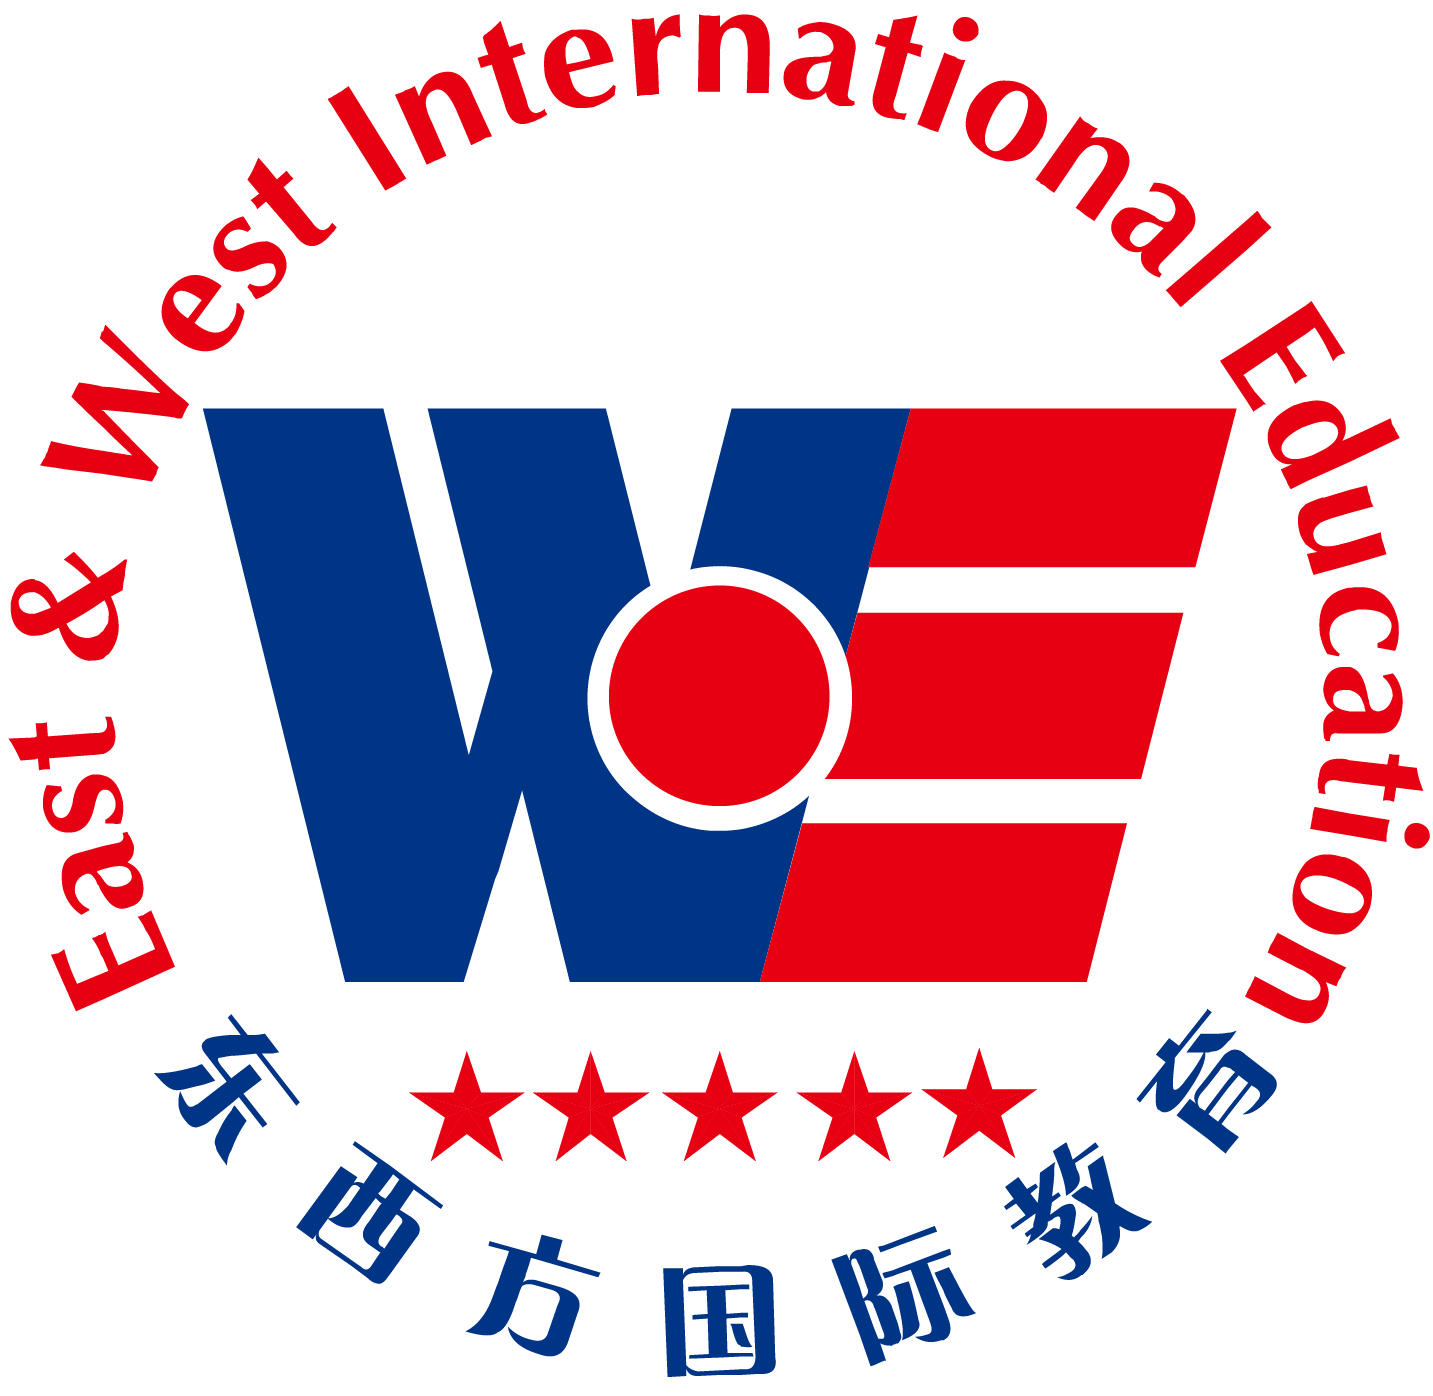 东西方国际教育——以发展国际教育为核心、留学预科项目为主专业性的教育机构